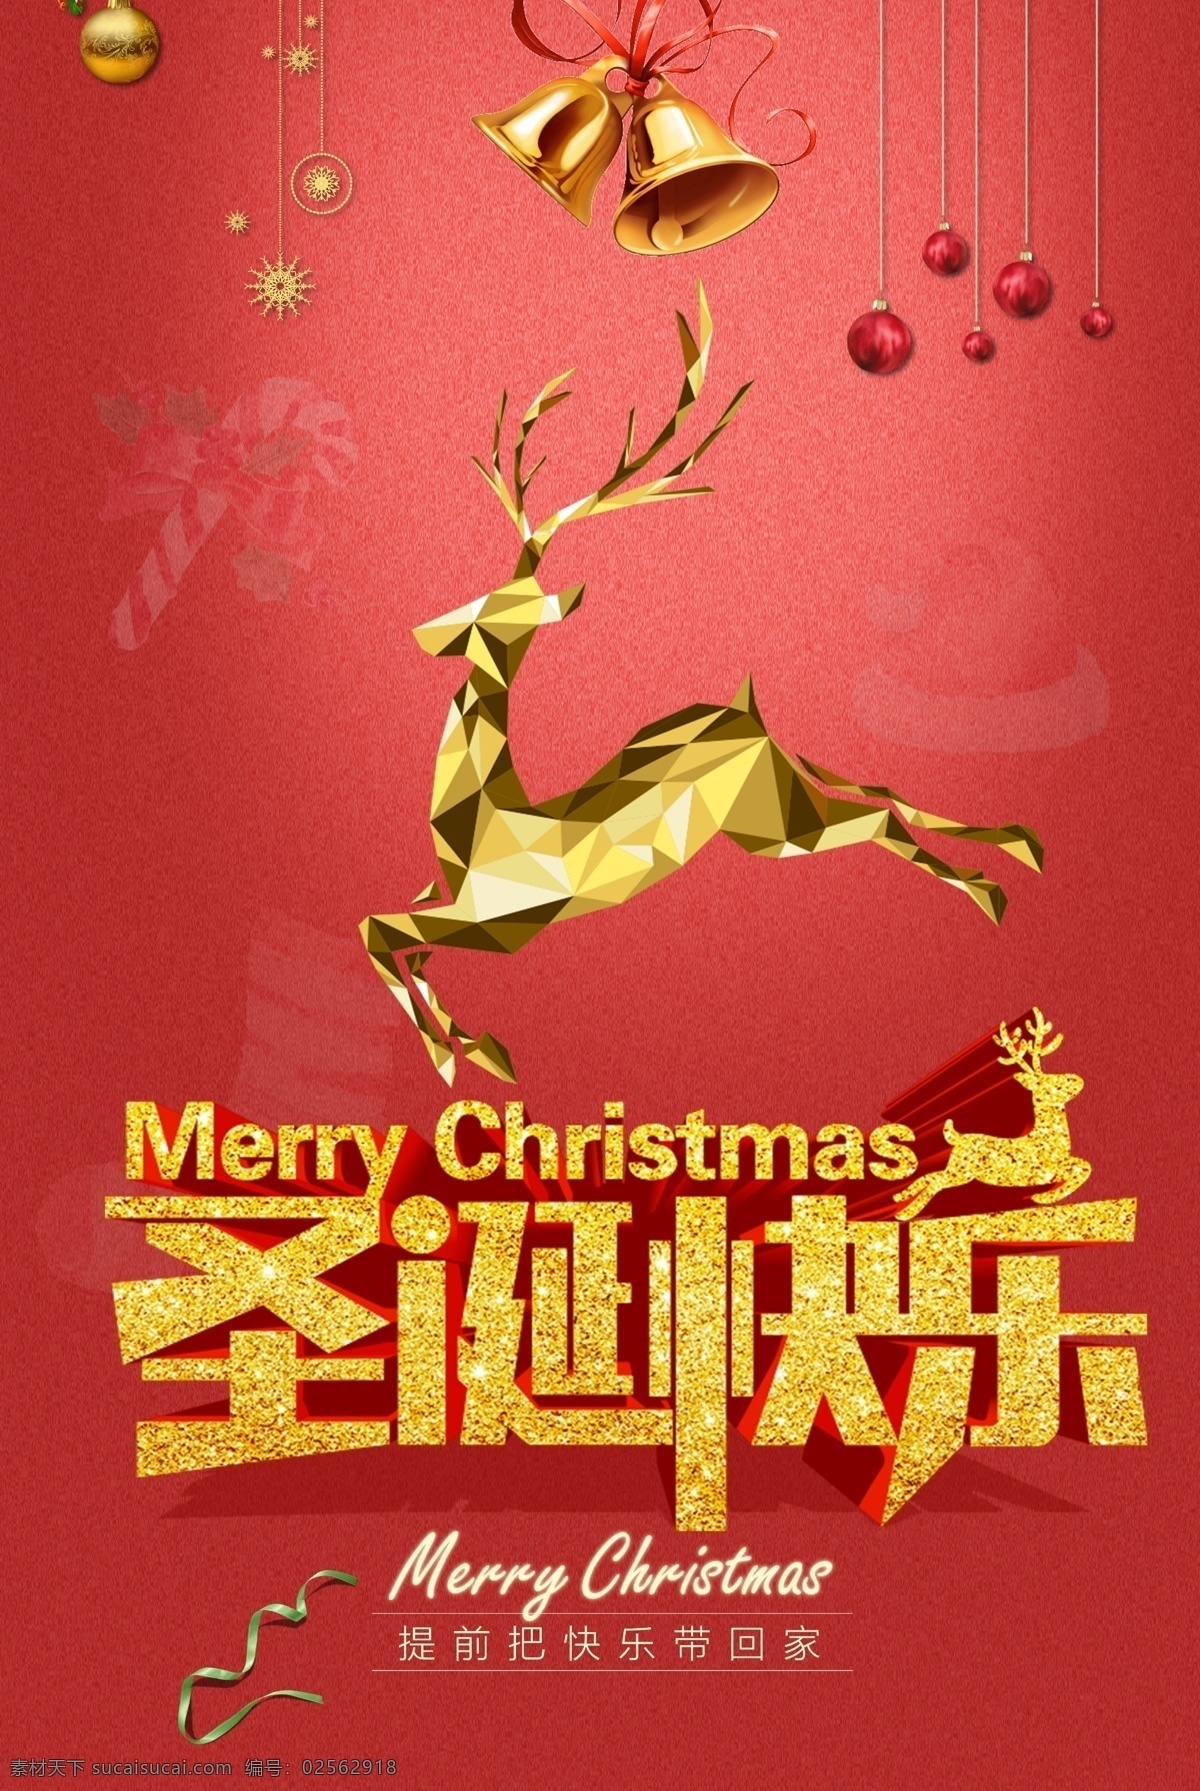 中国 风 圣诞节 快乐 带回 家 宣传海报 圣诞元旦 圣诞素材 商场 圣诞 海报 圣诞展板 欢乐圣诞 惠全城 圣诞大促 圣诞促销 元旦促销 圣诞快乐 商场圣诞 圣诞商场 旦节 诞节